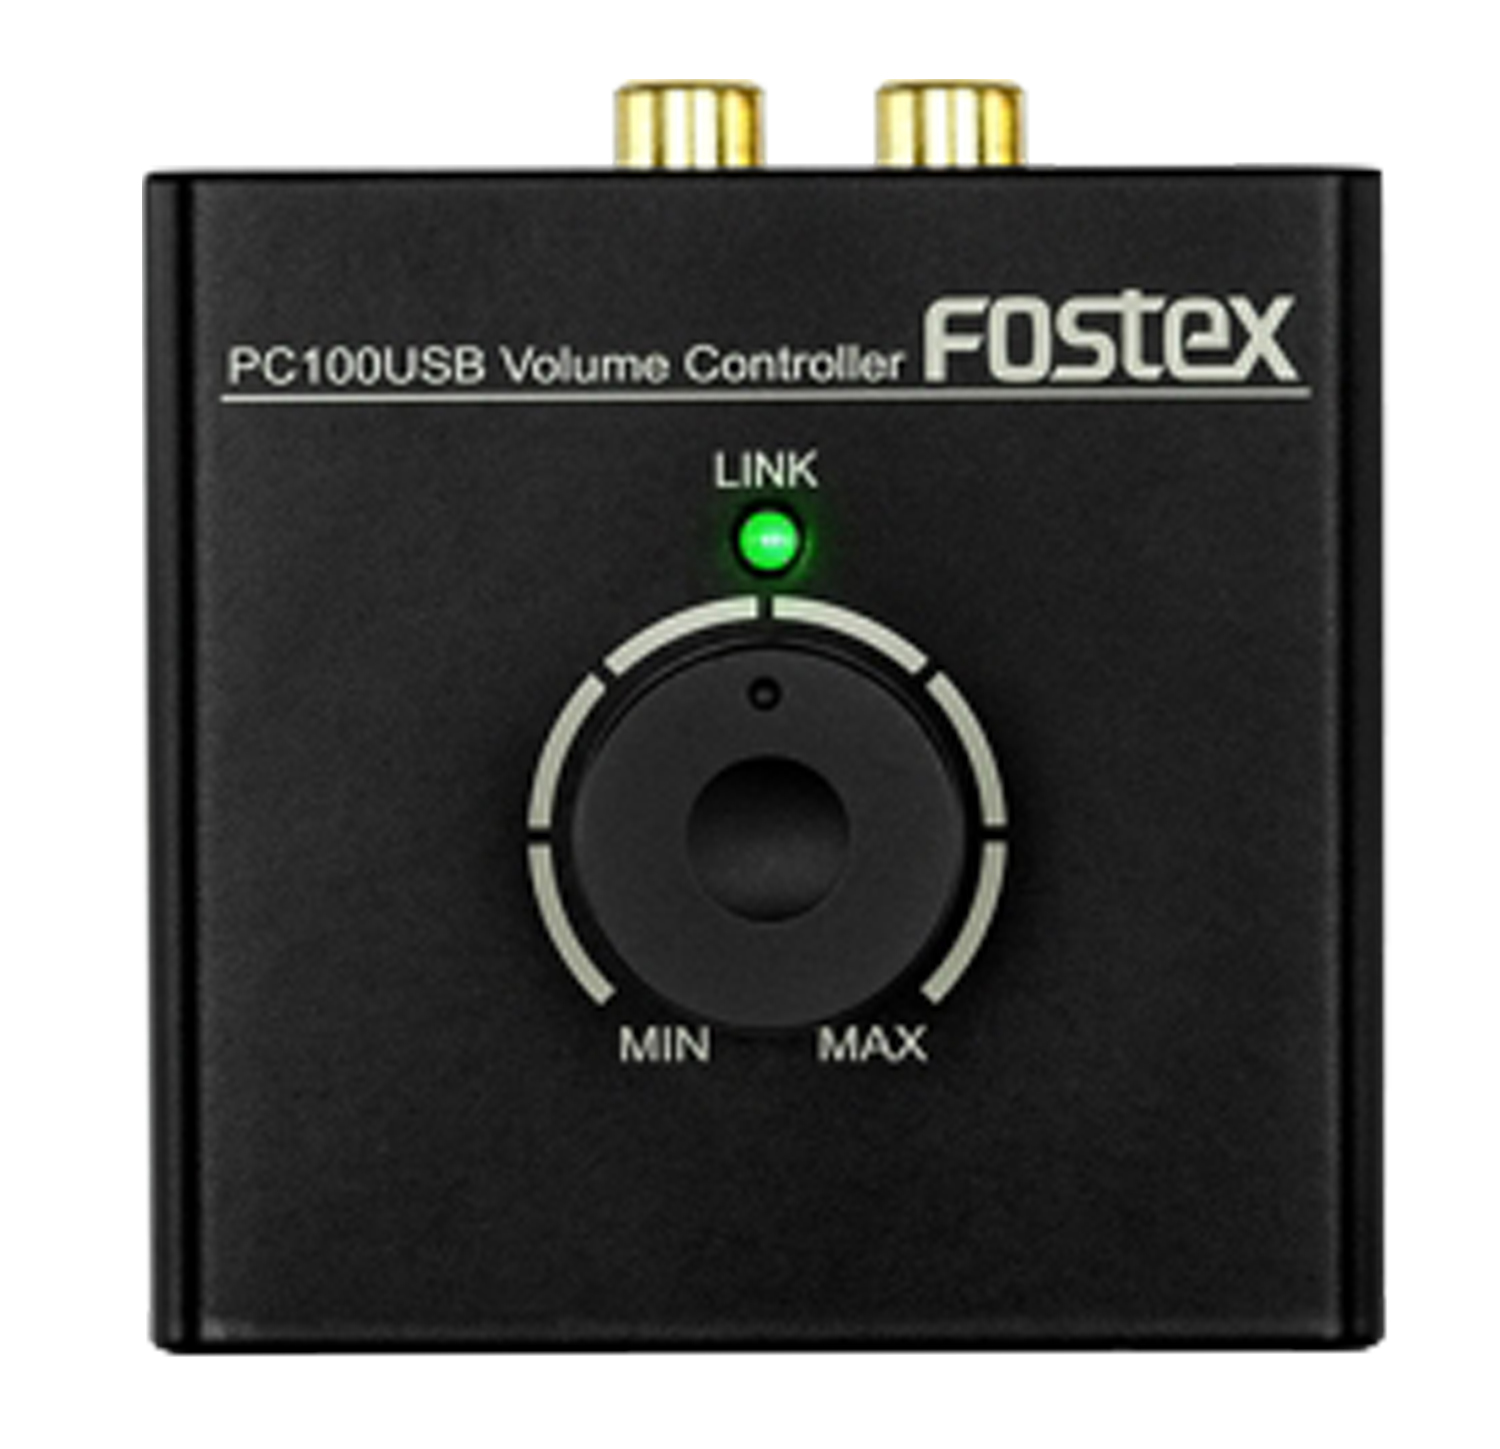 FOSTEX ボリュームコントローラー PC100USB - 1